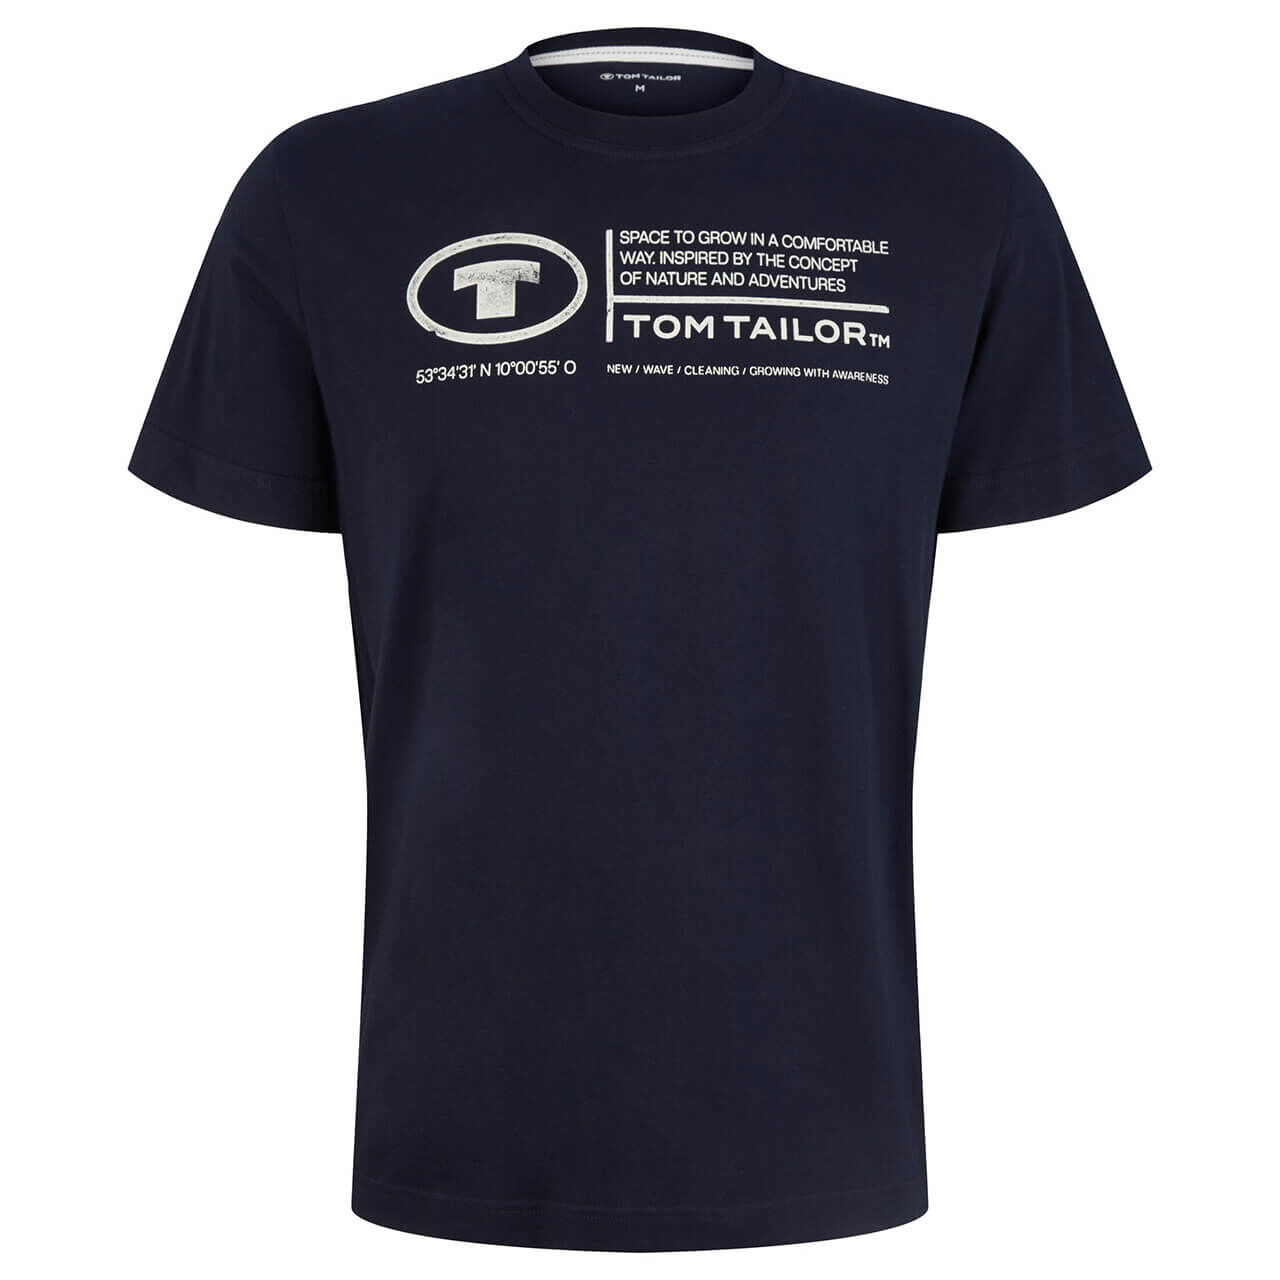 Tom Tailor Herren T-Shirt sky captain blue logo wording